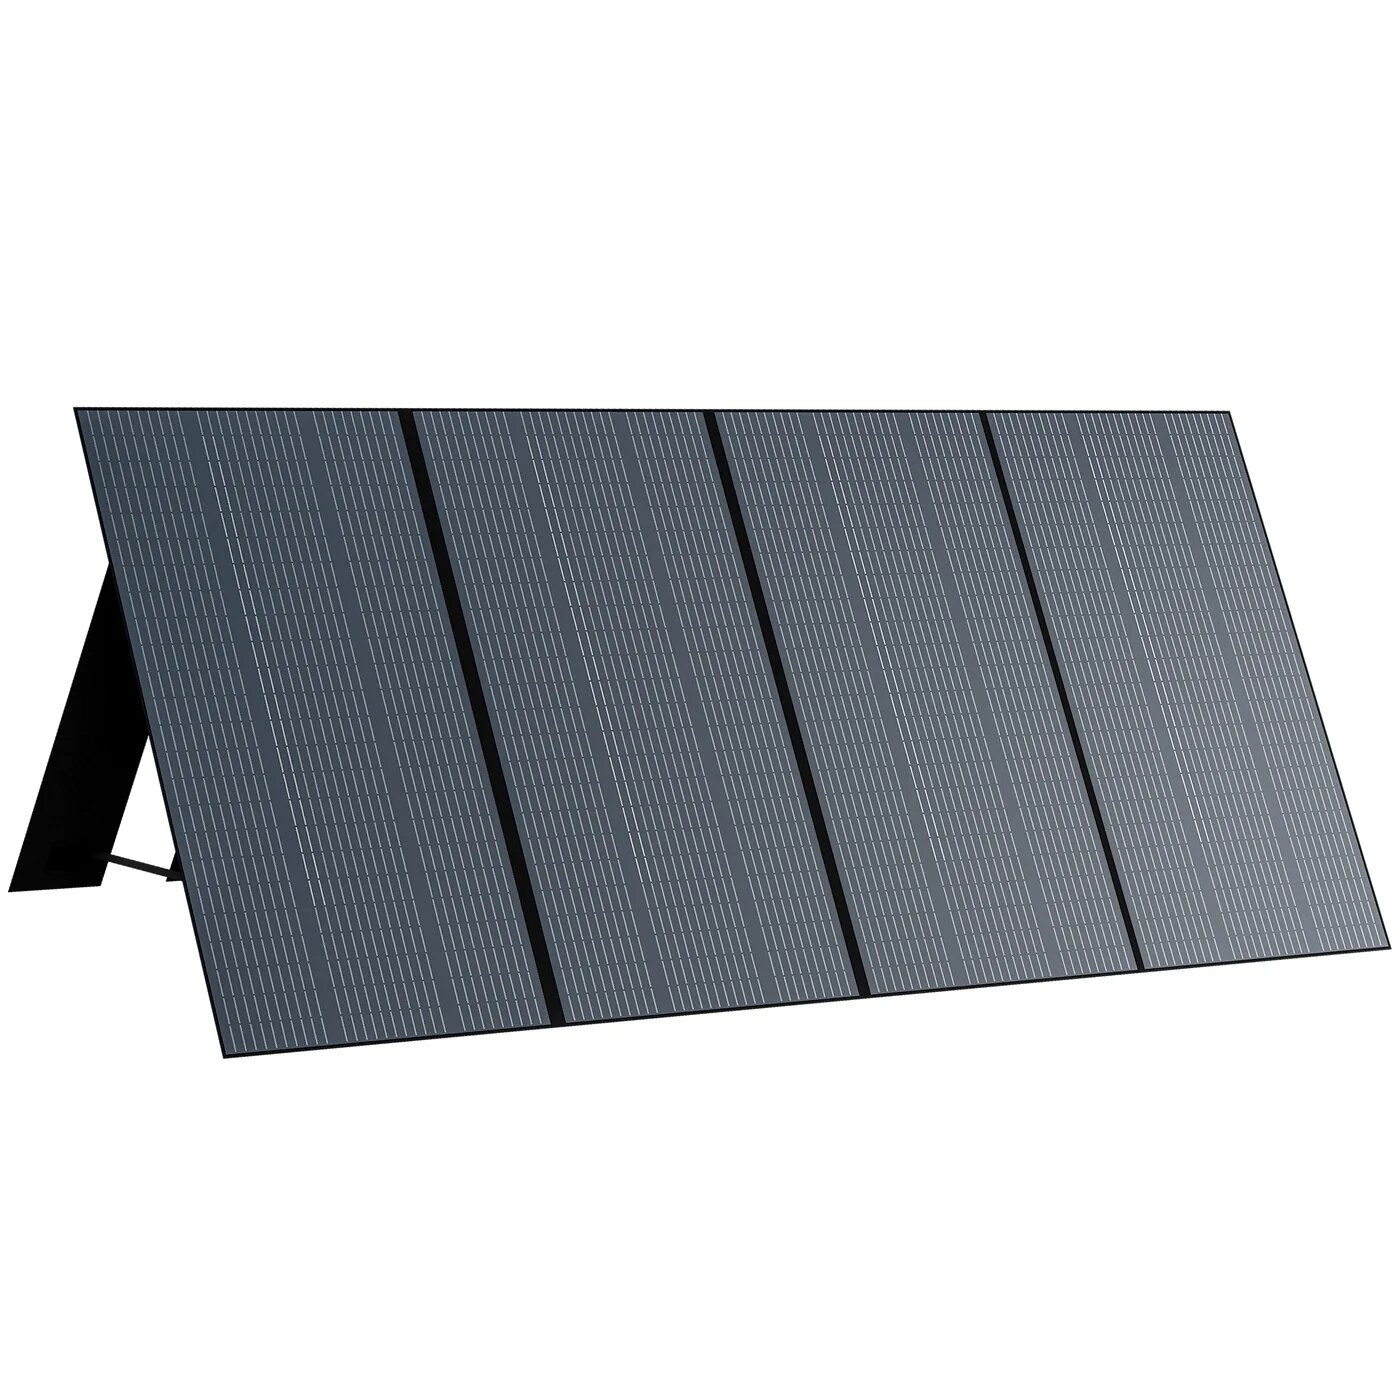 [EU Direct] BLUETTI PV350 350W لوحة شمسية 36V 9.7A طاقة شمسية محمولة شاحن تحويل معدل حتى 23.4٪ 86.5 * 37 * 0.9 بوصة